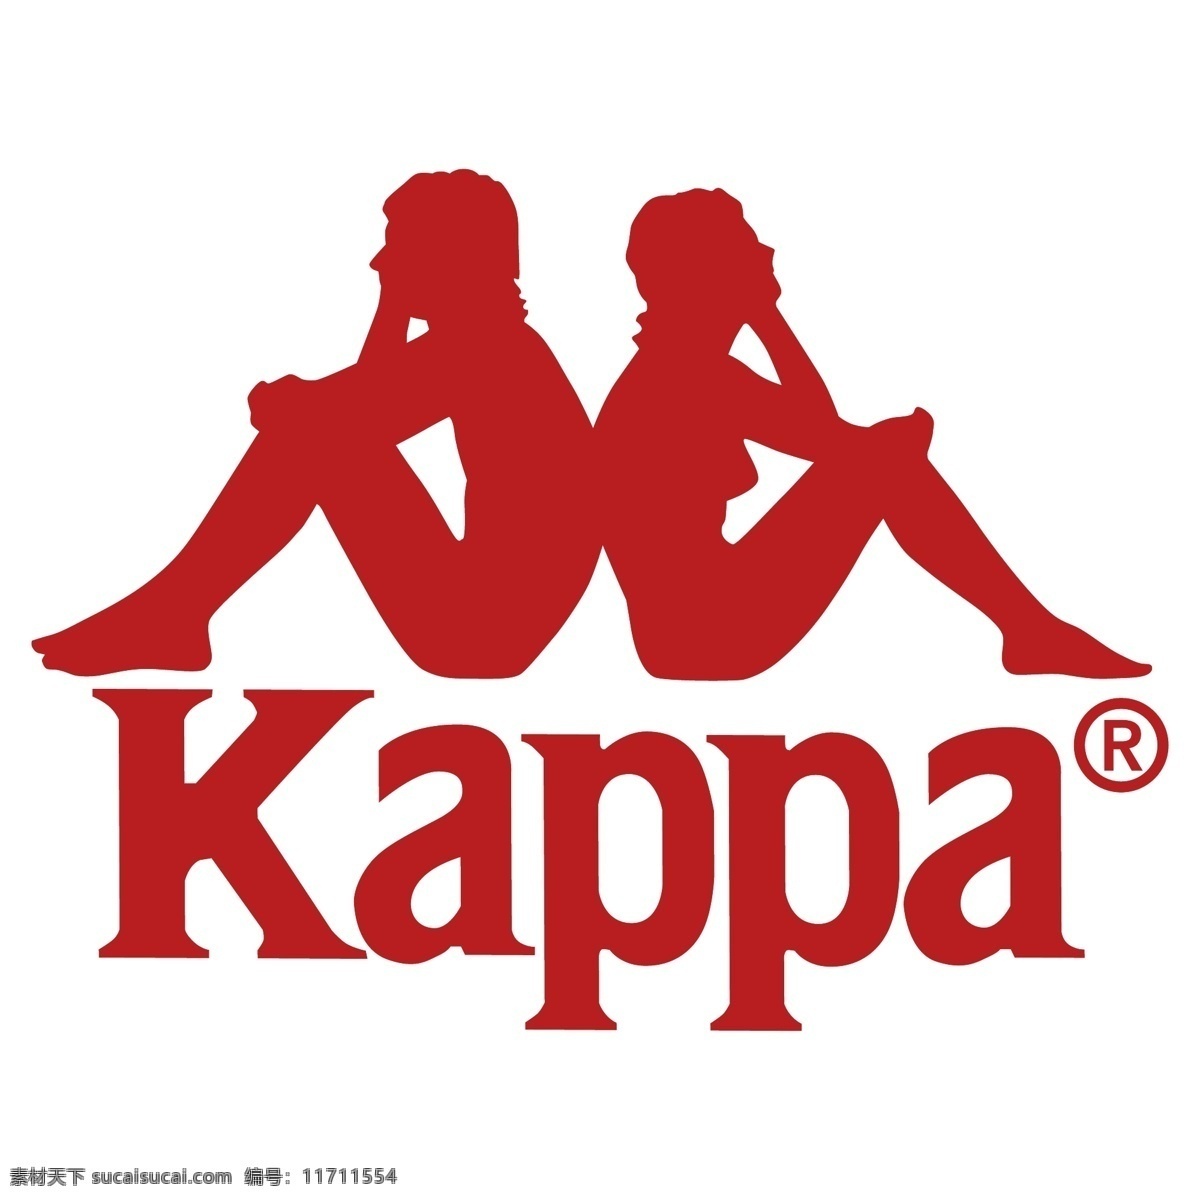 卡帕logo 卡帕 kappa logo 运动休闲服装 标志 logo集合 标志图标 企业